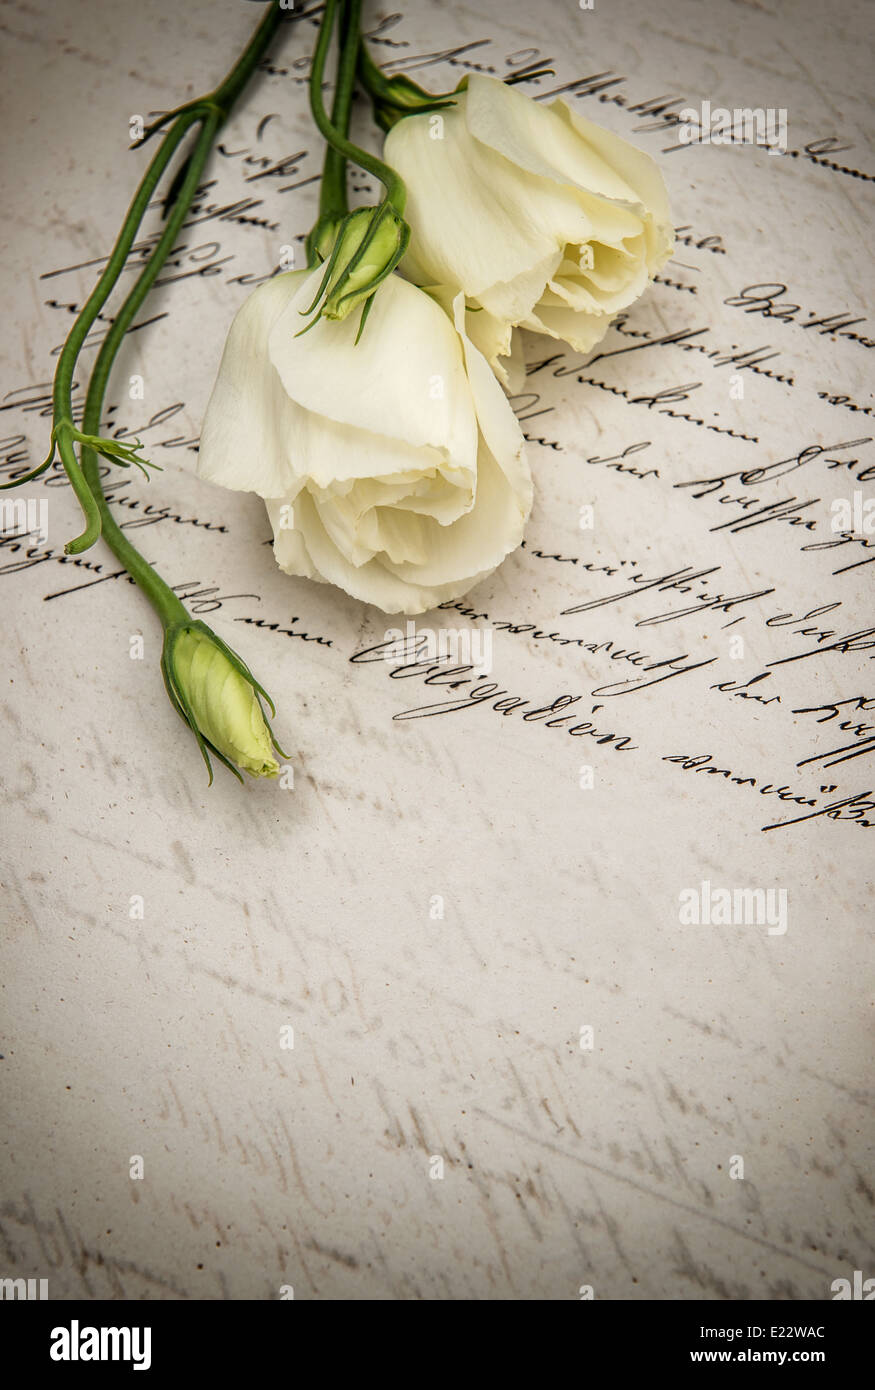 Manuscrite ancienne lettre d'amour et de fleurs blanches. retro toned photo Banque D'Images